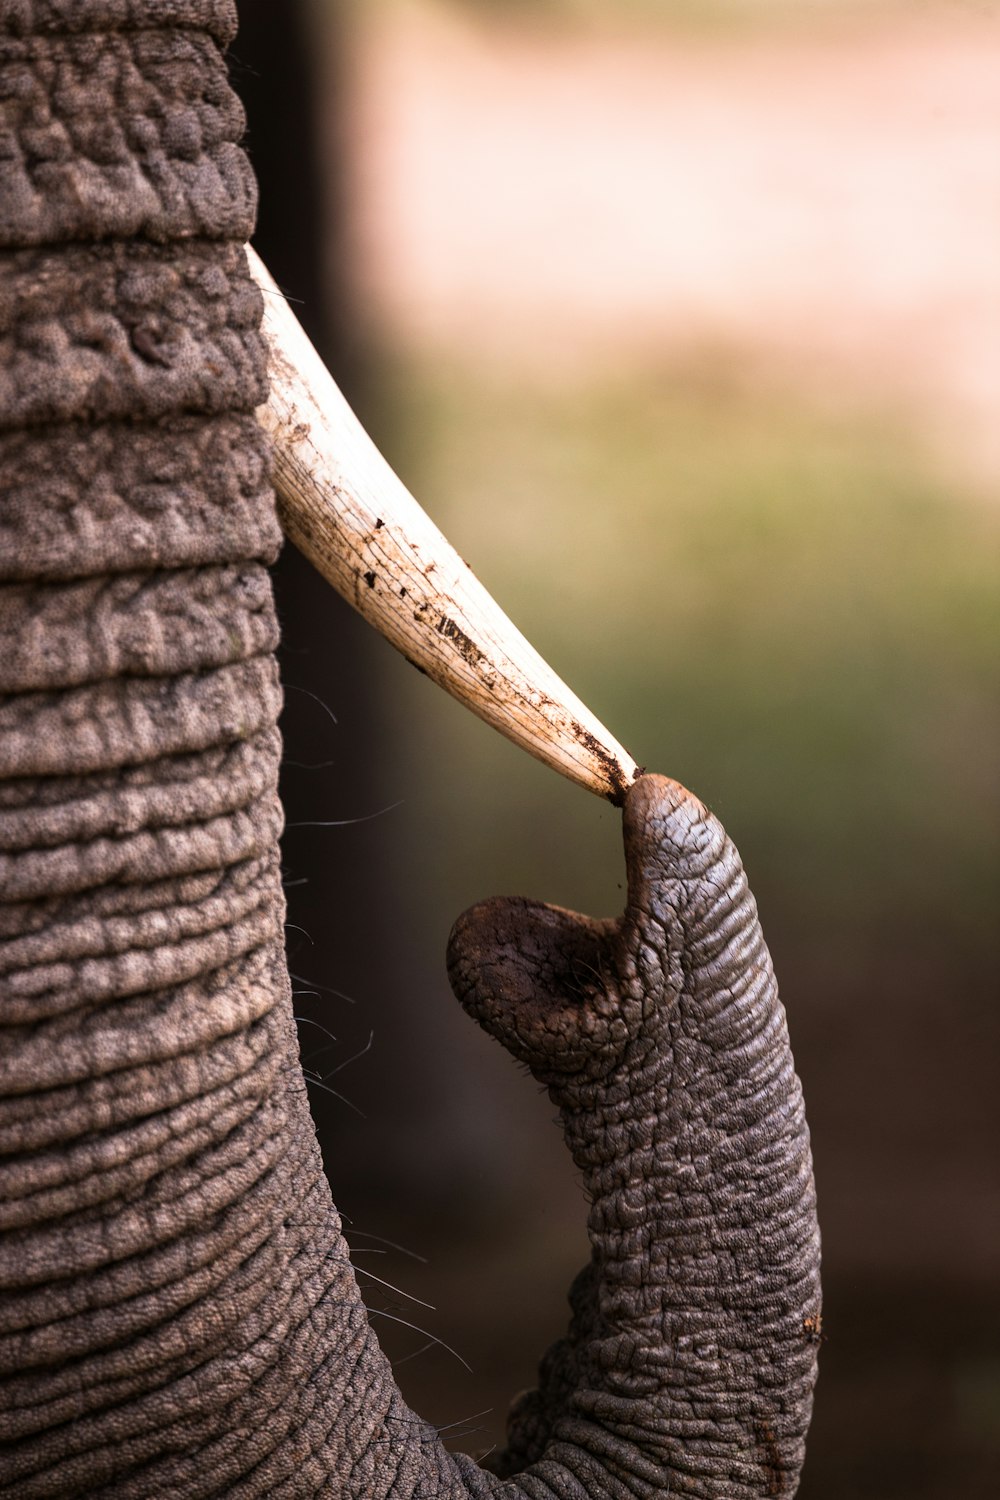 엄니를 만지는 코끼리의 얕은 초점 사진